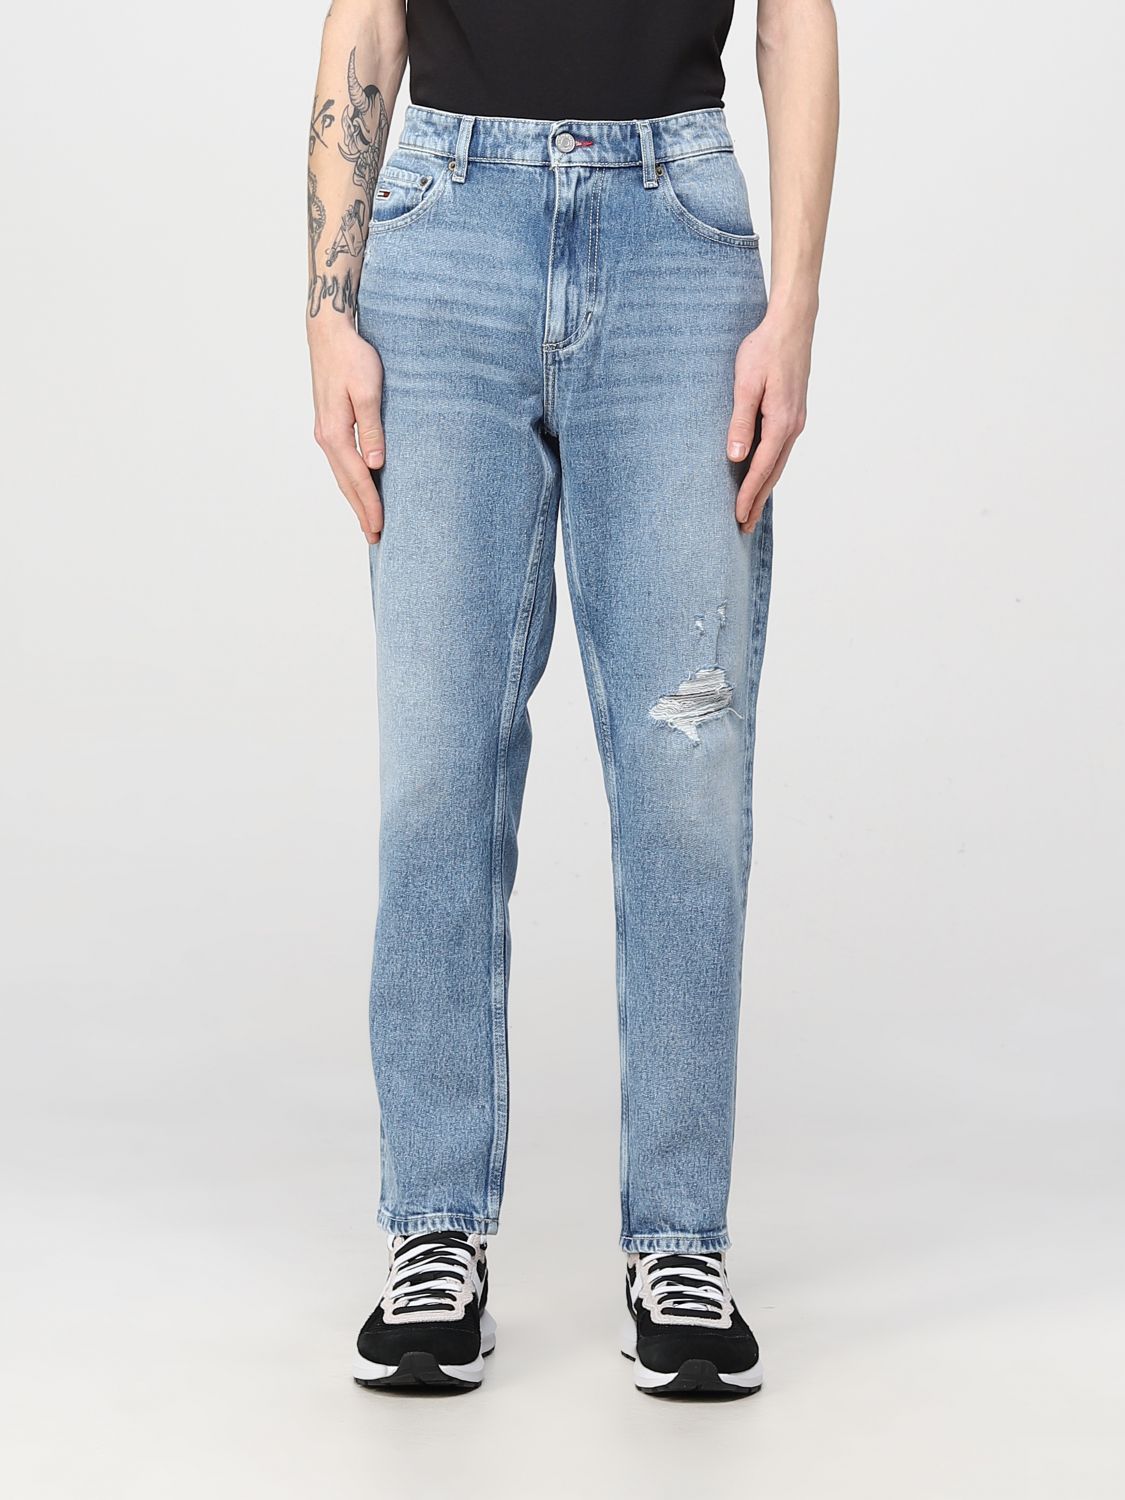 Tommy Jeans Outlet: jeans for man - Denim | Jeans jeans DM0DM14278 online on